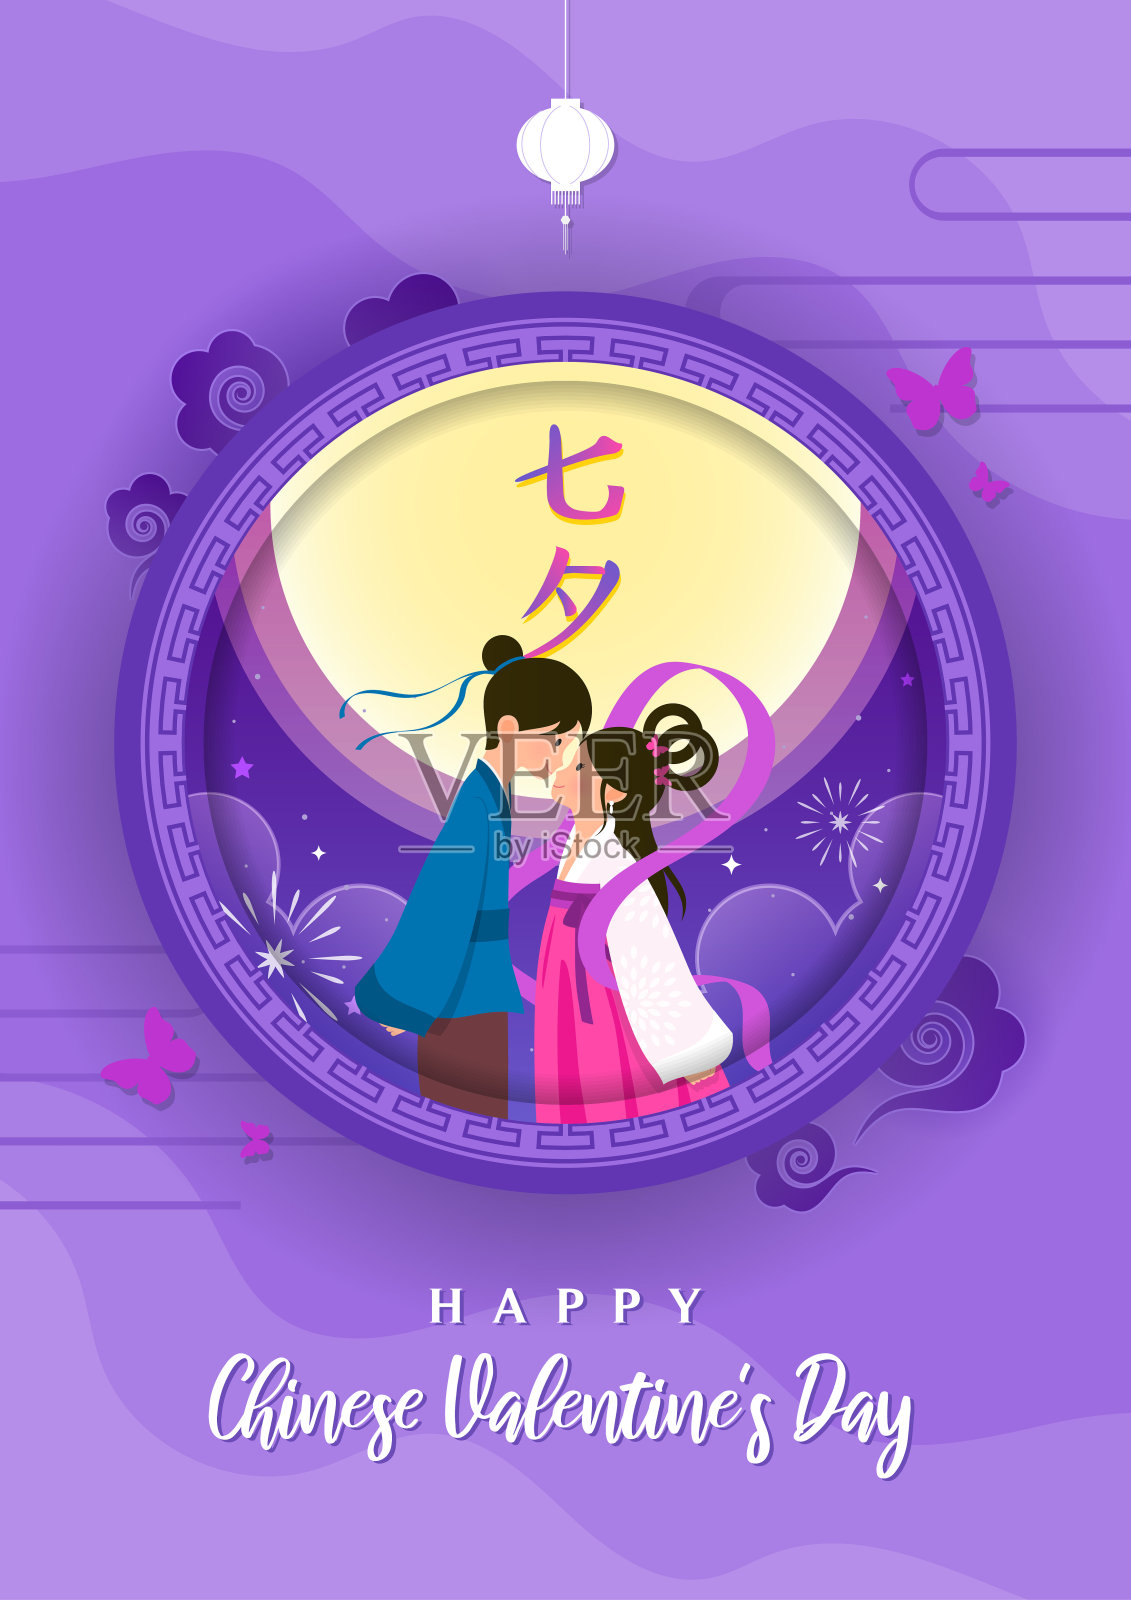 七夕节(中国情人节)海报设计矢量插画。传单设计。中文写的是“七夕”设计模板素材